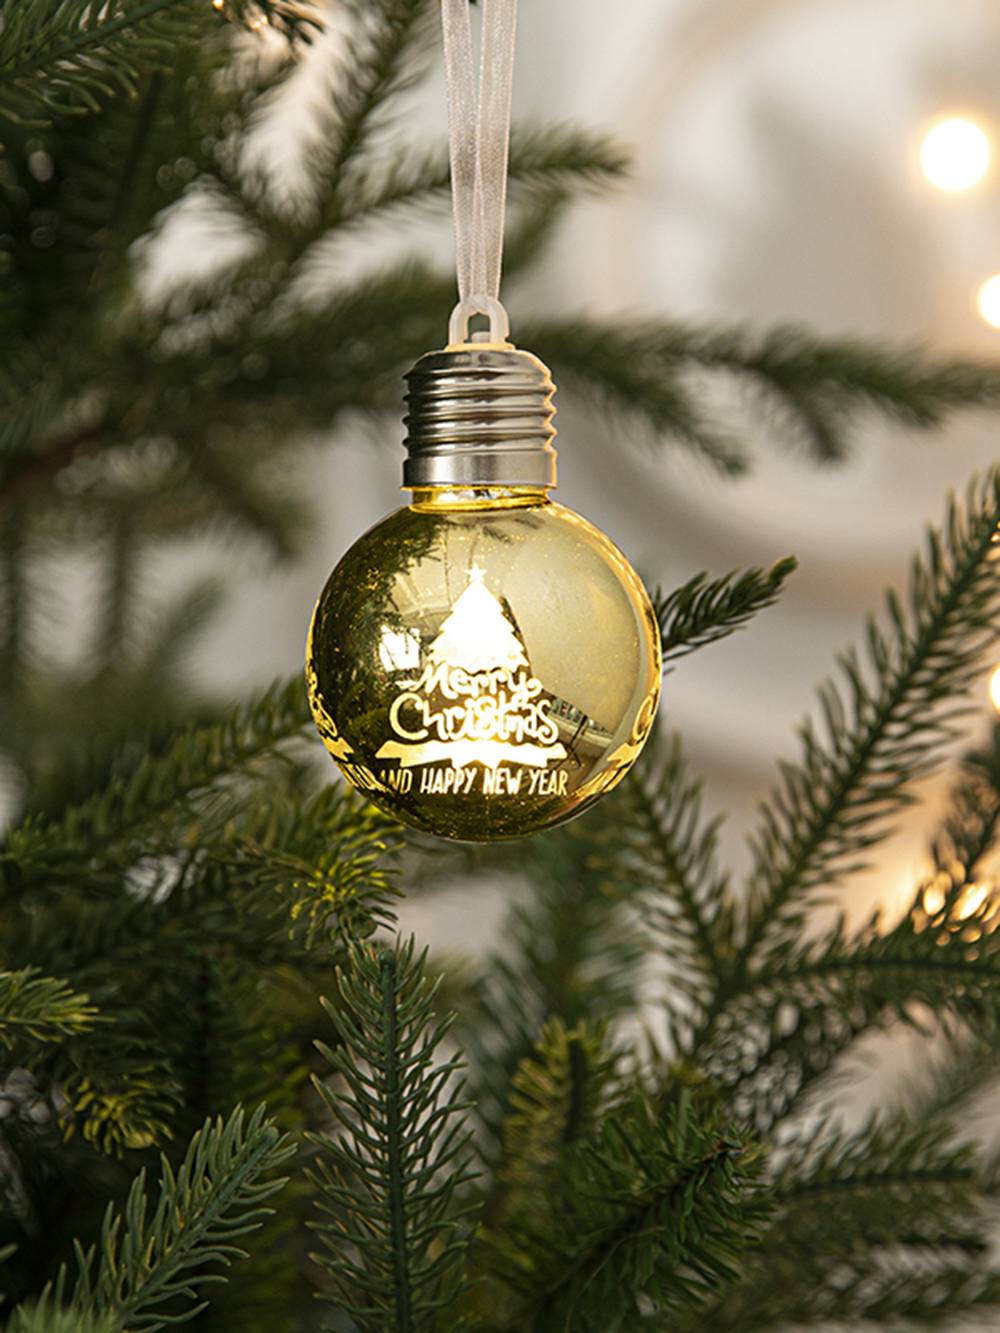 Kreative Weihnachtskugel mit galvanisierter Glühbirne zum Aufhängen